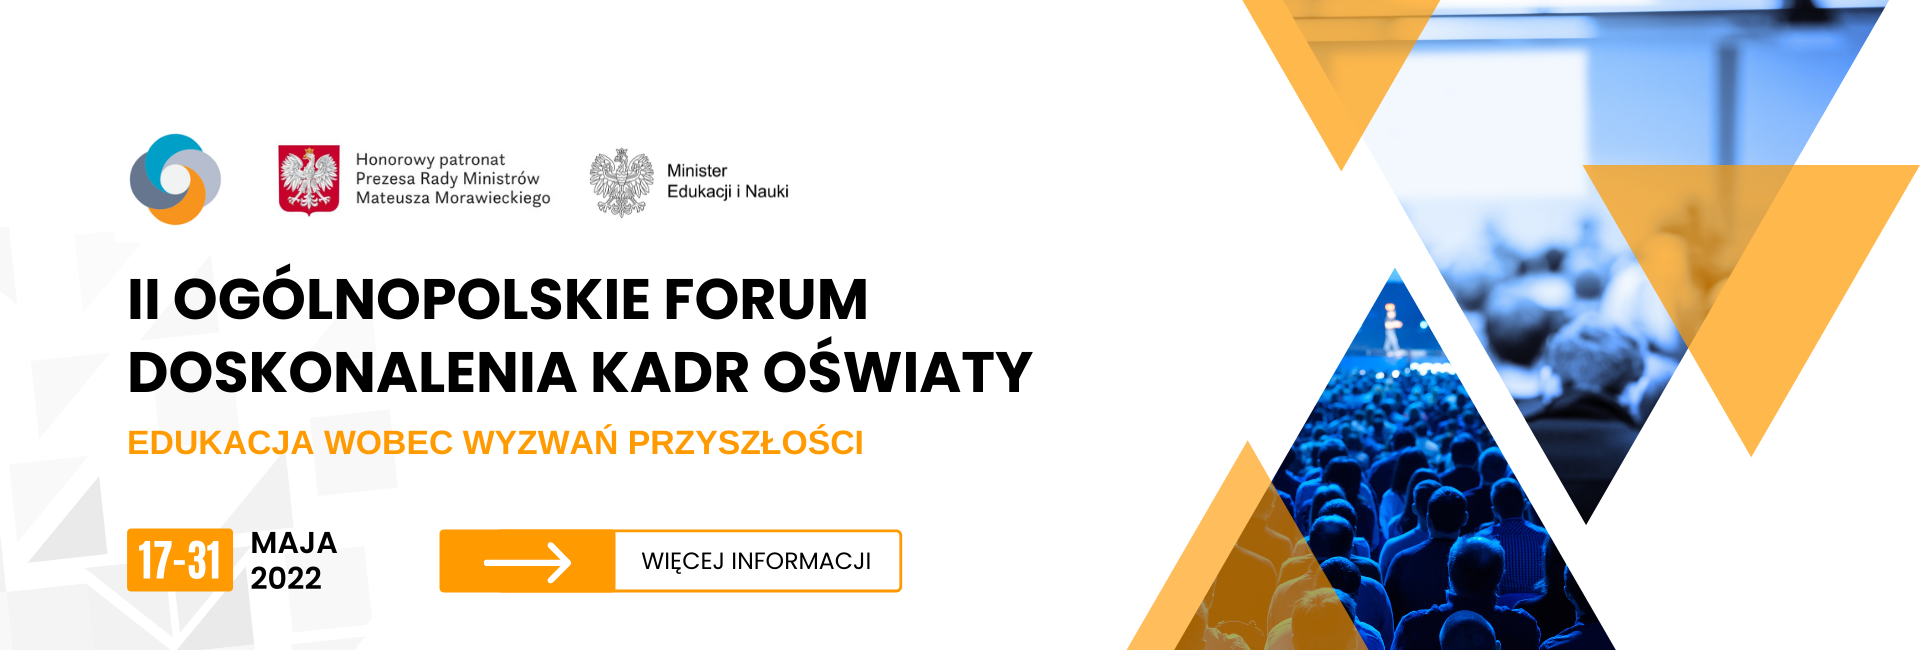 II Ogólnopolskie Forum Doskonalenia Kadr Oświaty - Edukacja wobec wyzwań przyszłości 17-31 maja 2022